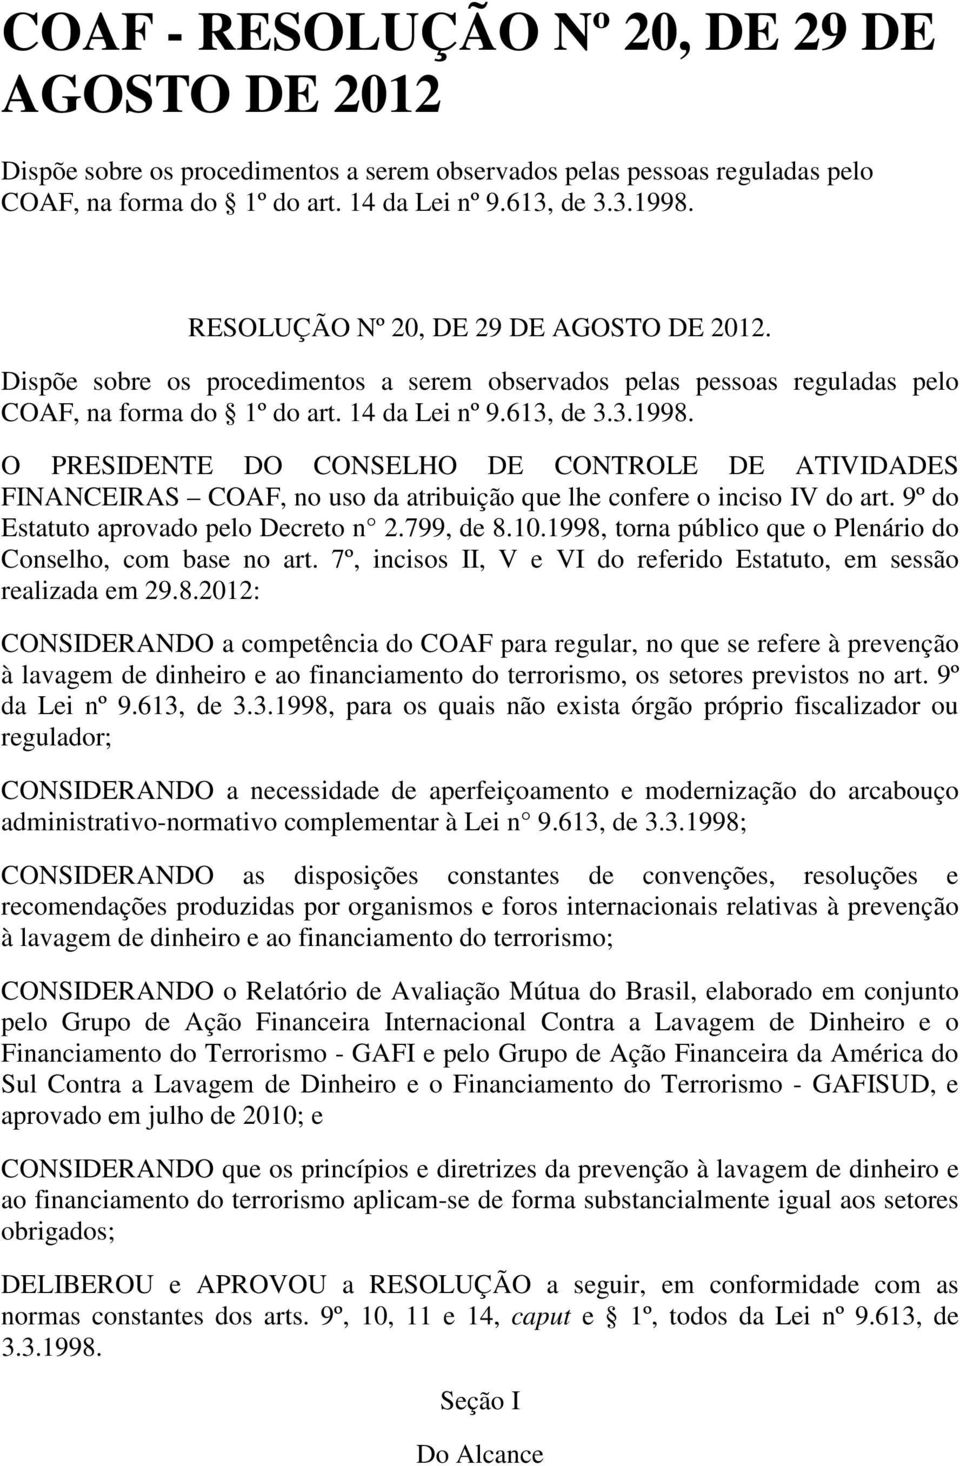 O PRESIDENTE DO CONSELHO DE CONTROLE DE ATIVIDADES FINANCEIRAS COAF, no uso da atribuição que lhe confere o inciso IV do art. 9º do Estatuto aprovado pelo Decreto n 2.799, de 8.10.